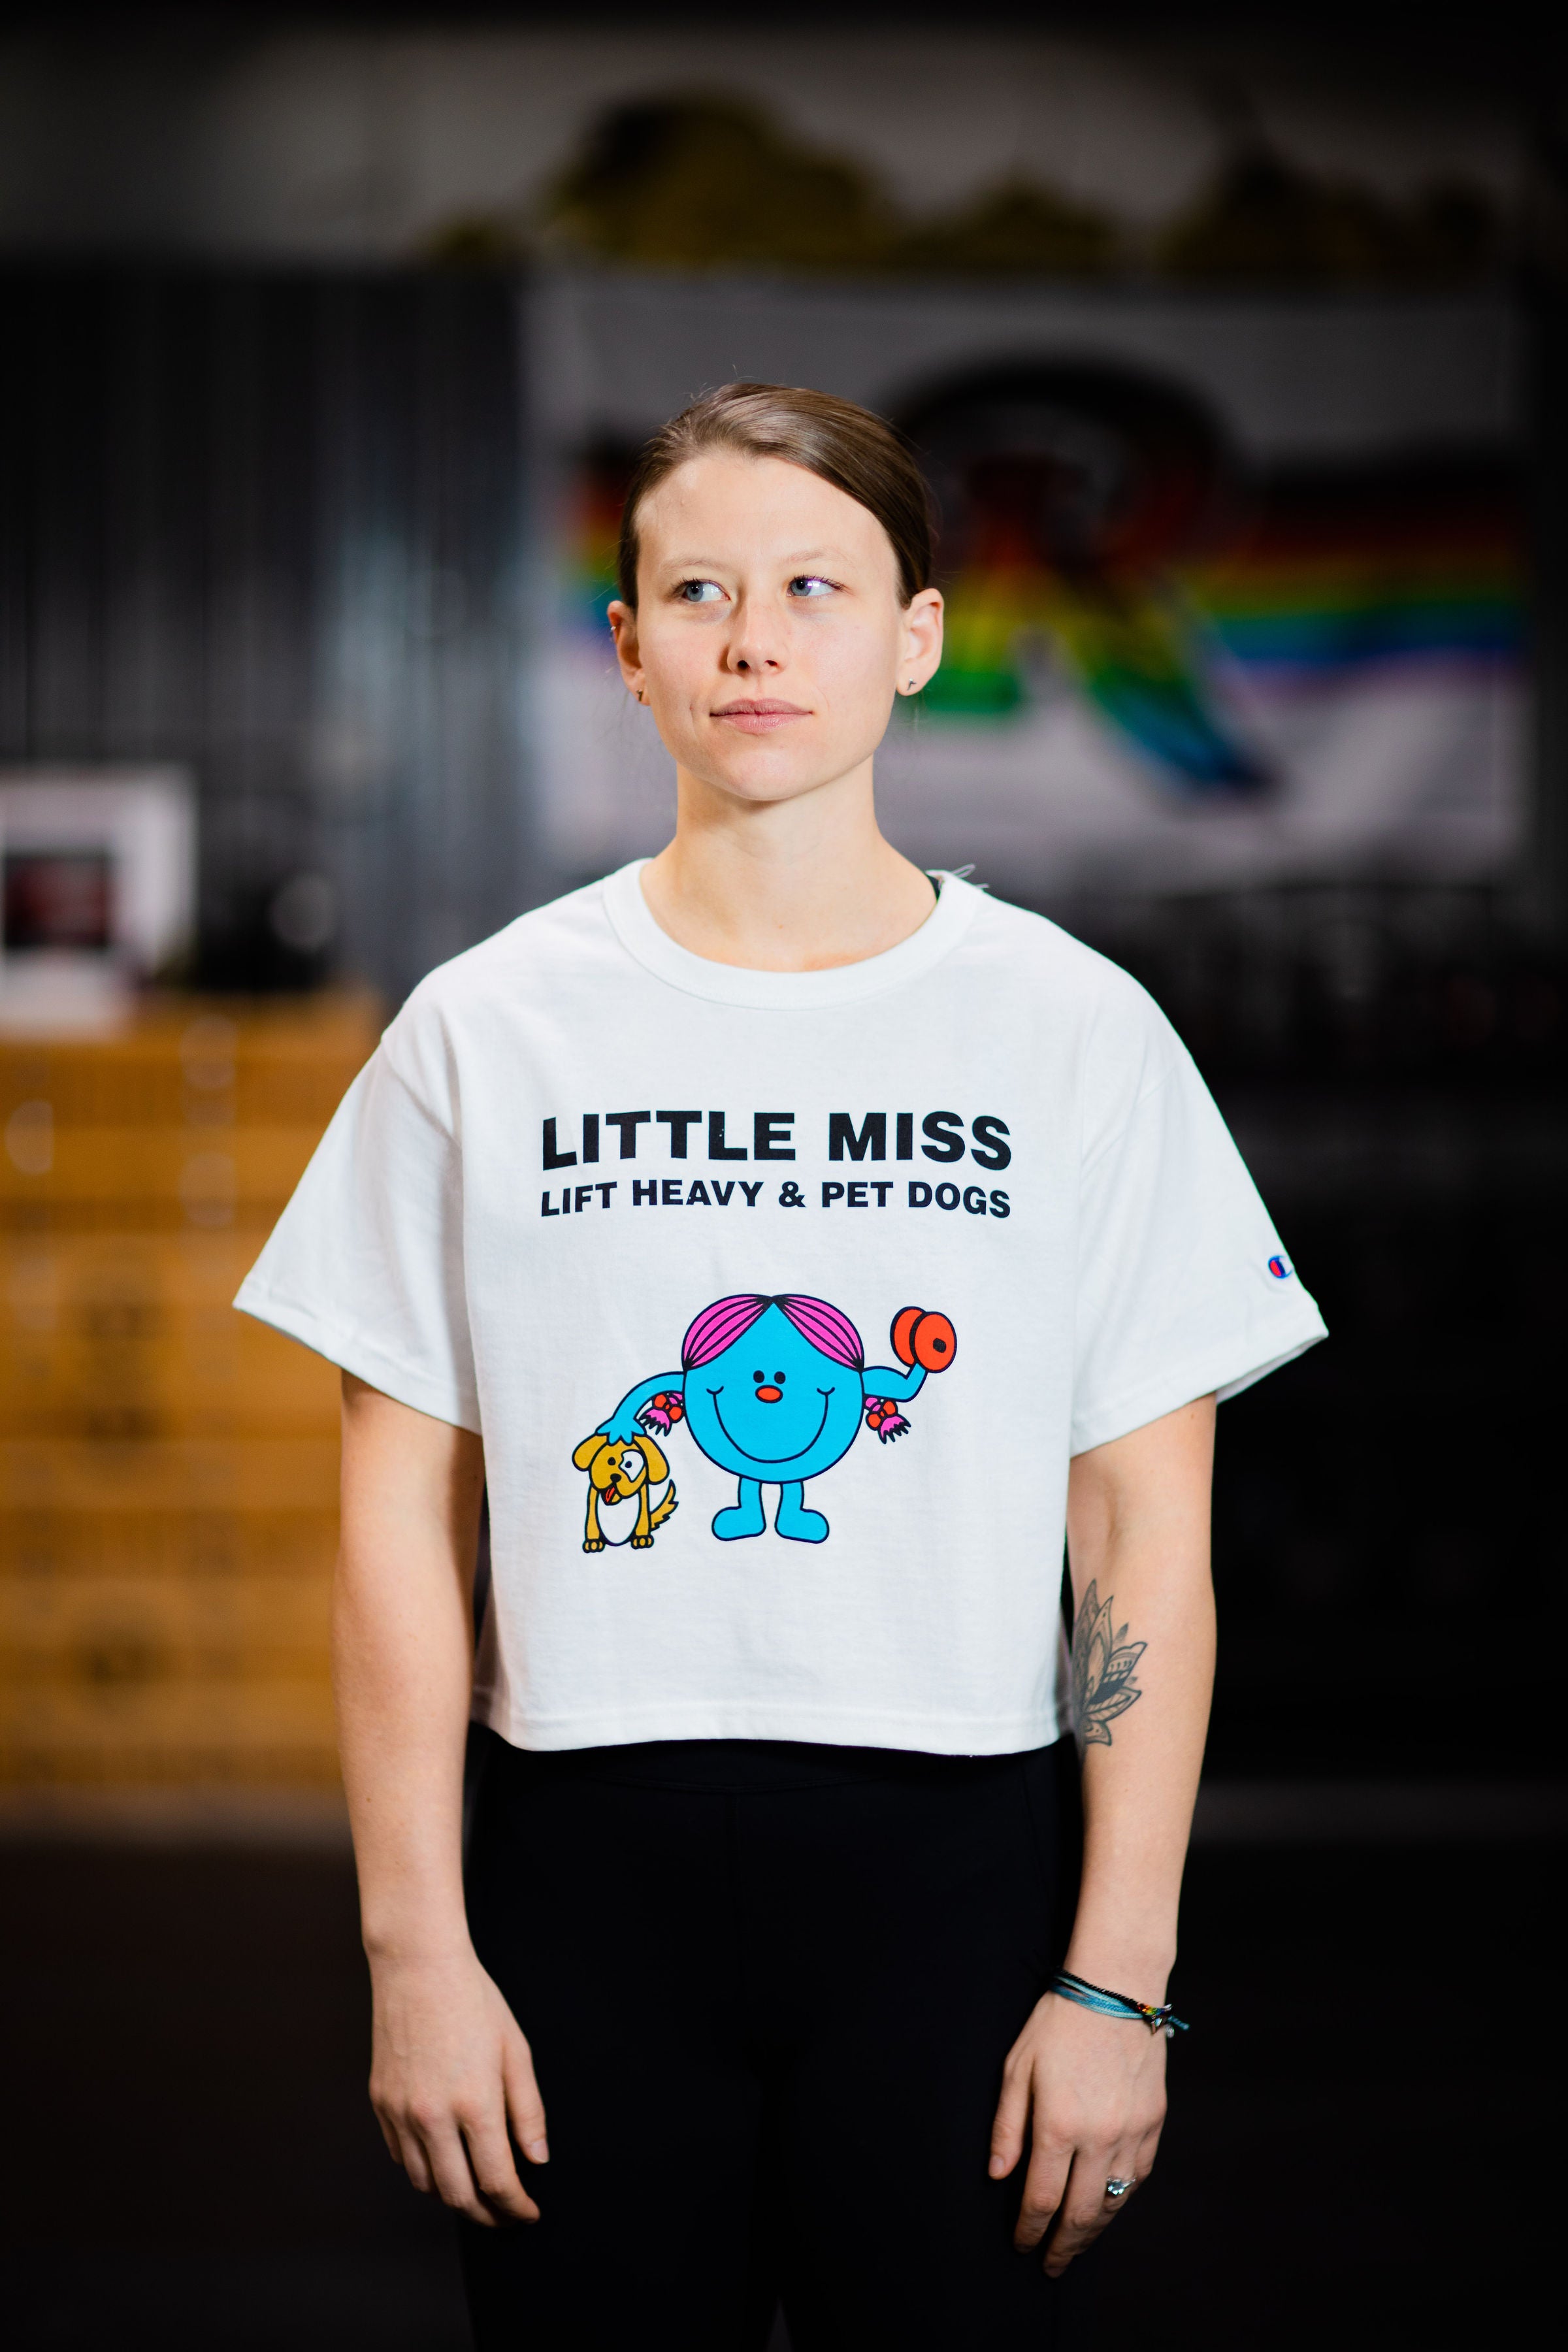 "LITTLE MISS Lift Heavy & Pet Dogs" - Women's Champion Crop